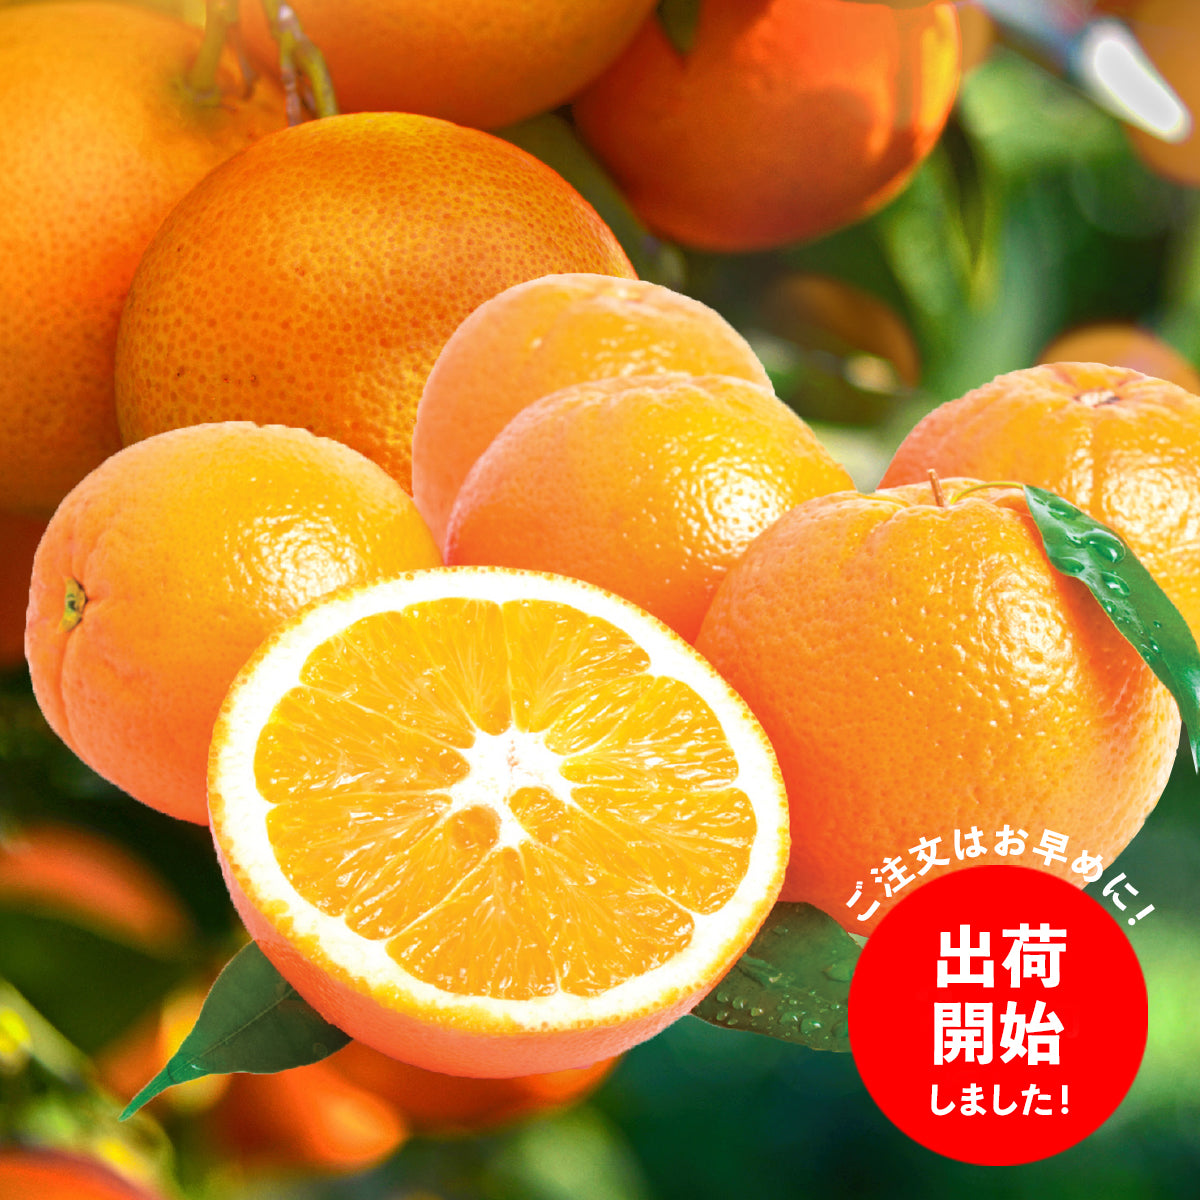  【米国向け】高糖度ロイヤルネーブルオレンジ